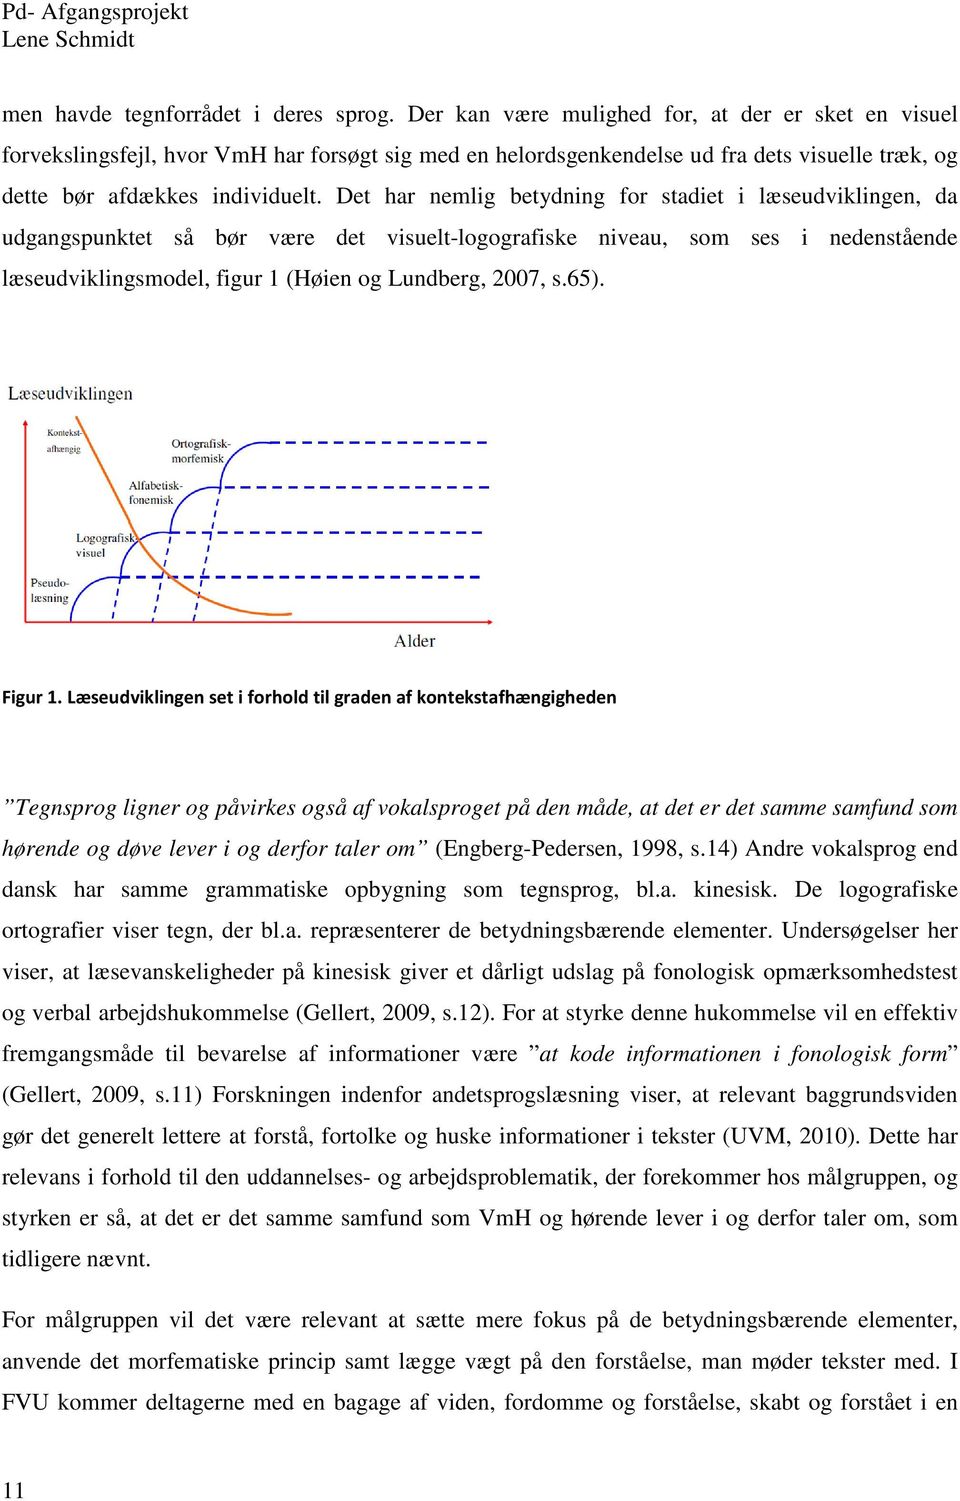 Det har nemlig betydning for stadiet i læseudviklingen, da udgangspunktet så bør være det visuelt-logografiske niveau, som ses i nedenstående læseudviklingsmodel, figur 1 (Høien og Lundberg, 2007, s.